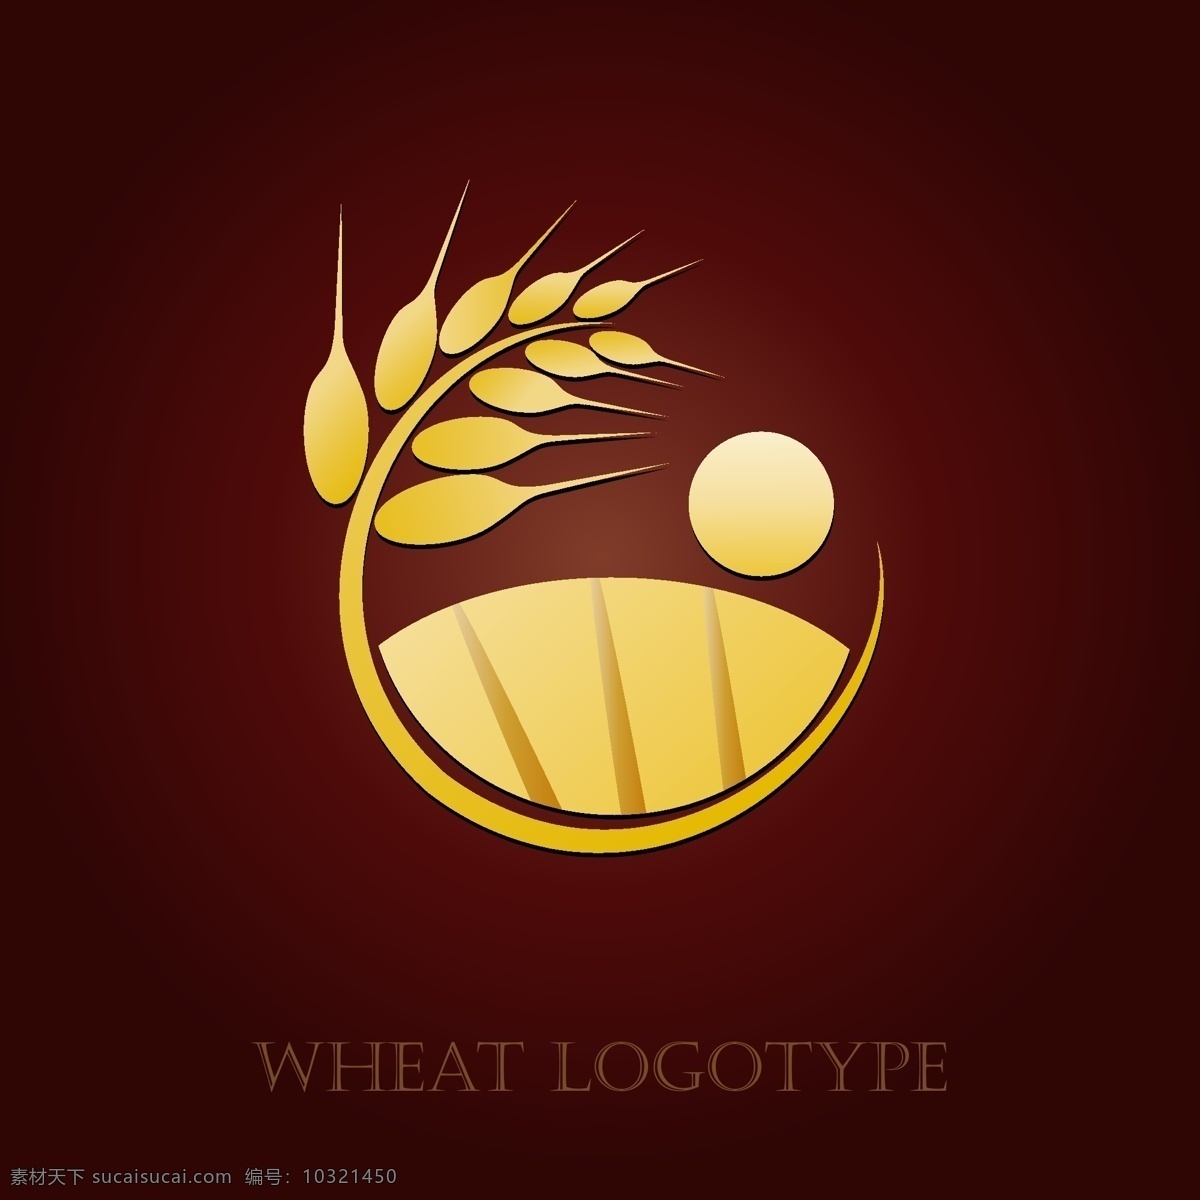 小麦标识 小麦标志 粮食标志 粮食标识 食物标识 食物标志 饭店标志 饭店标识 饭店logo 小麦 麦子 企业 logo 标志 标识标志图标 矢量